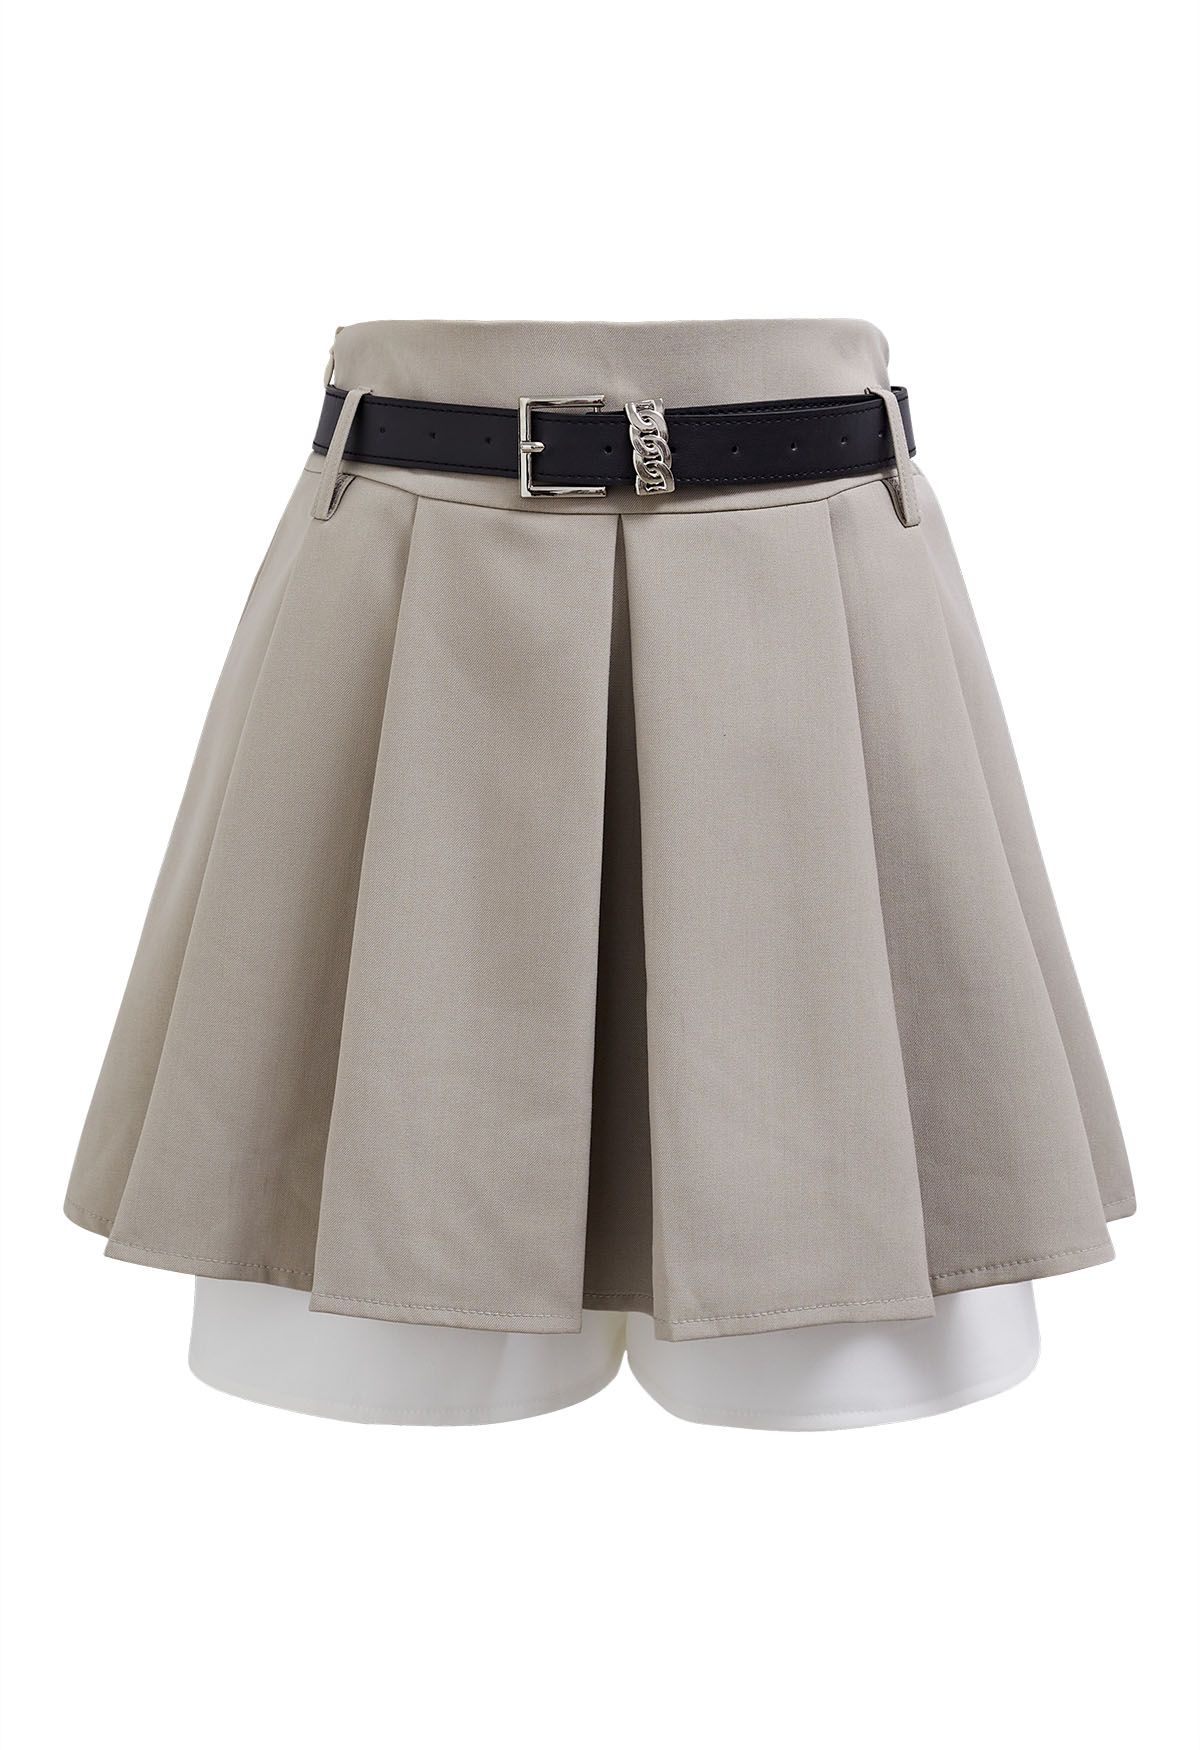 Falda pantalón plisada con dobladillo en contraste en color topo